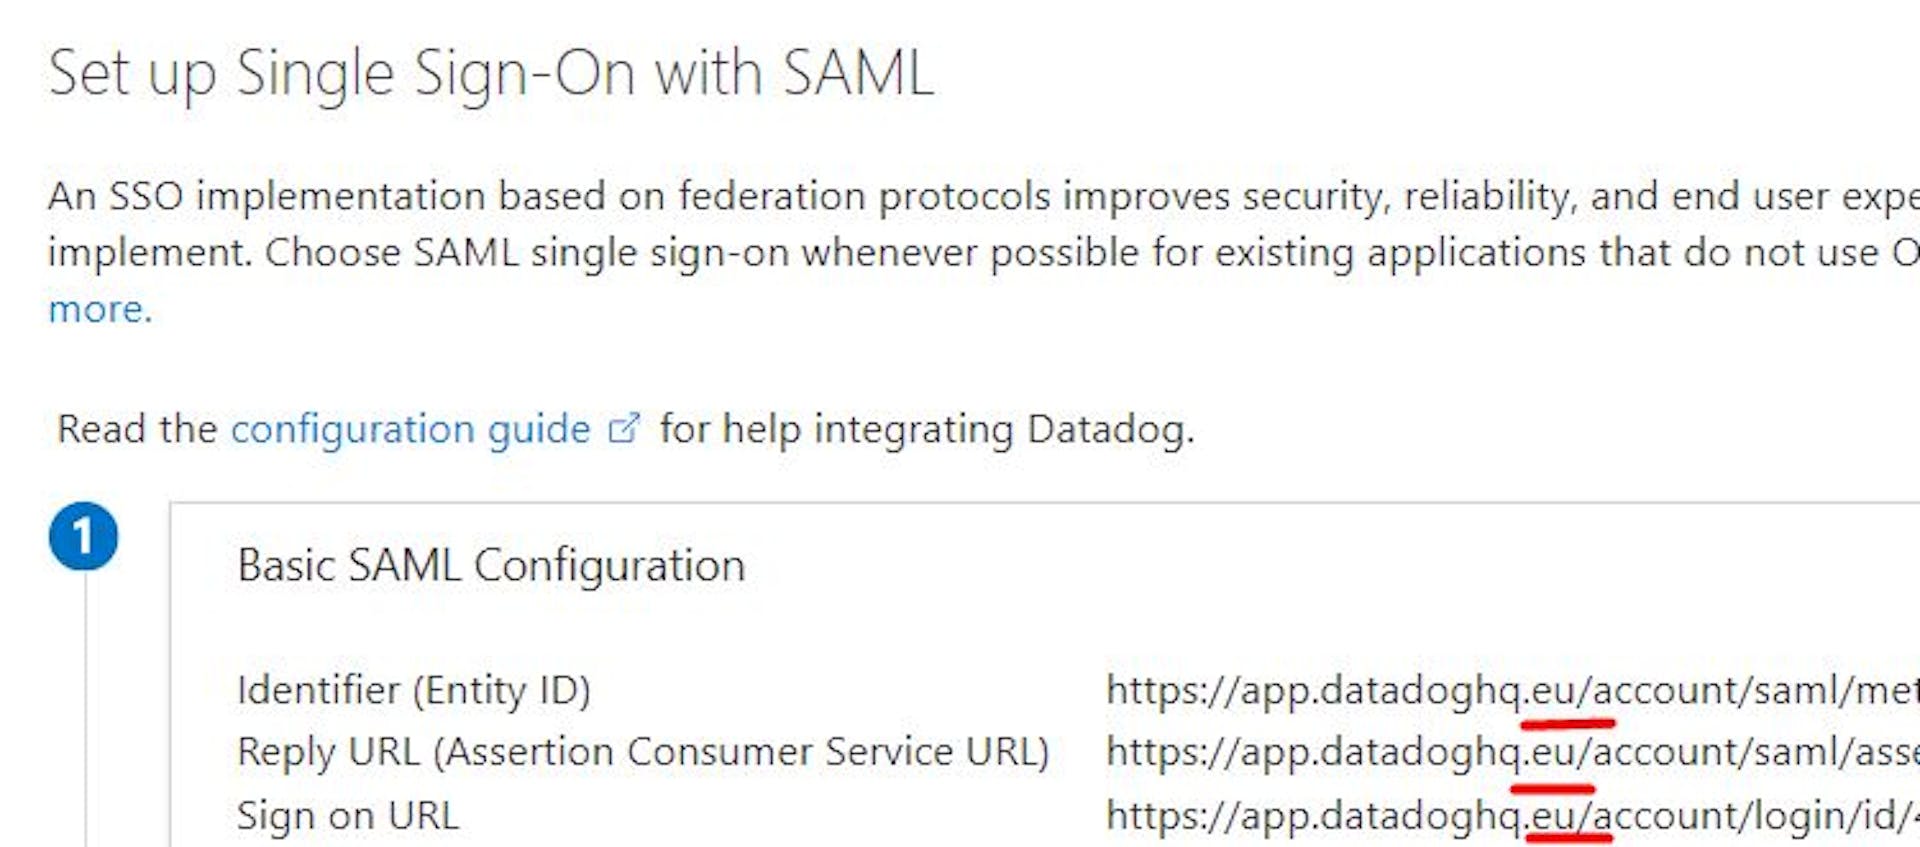 Configurar el inicio de sesión único con SAML